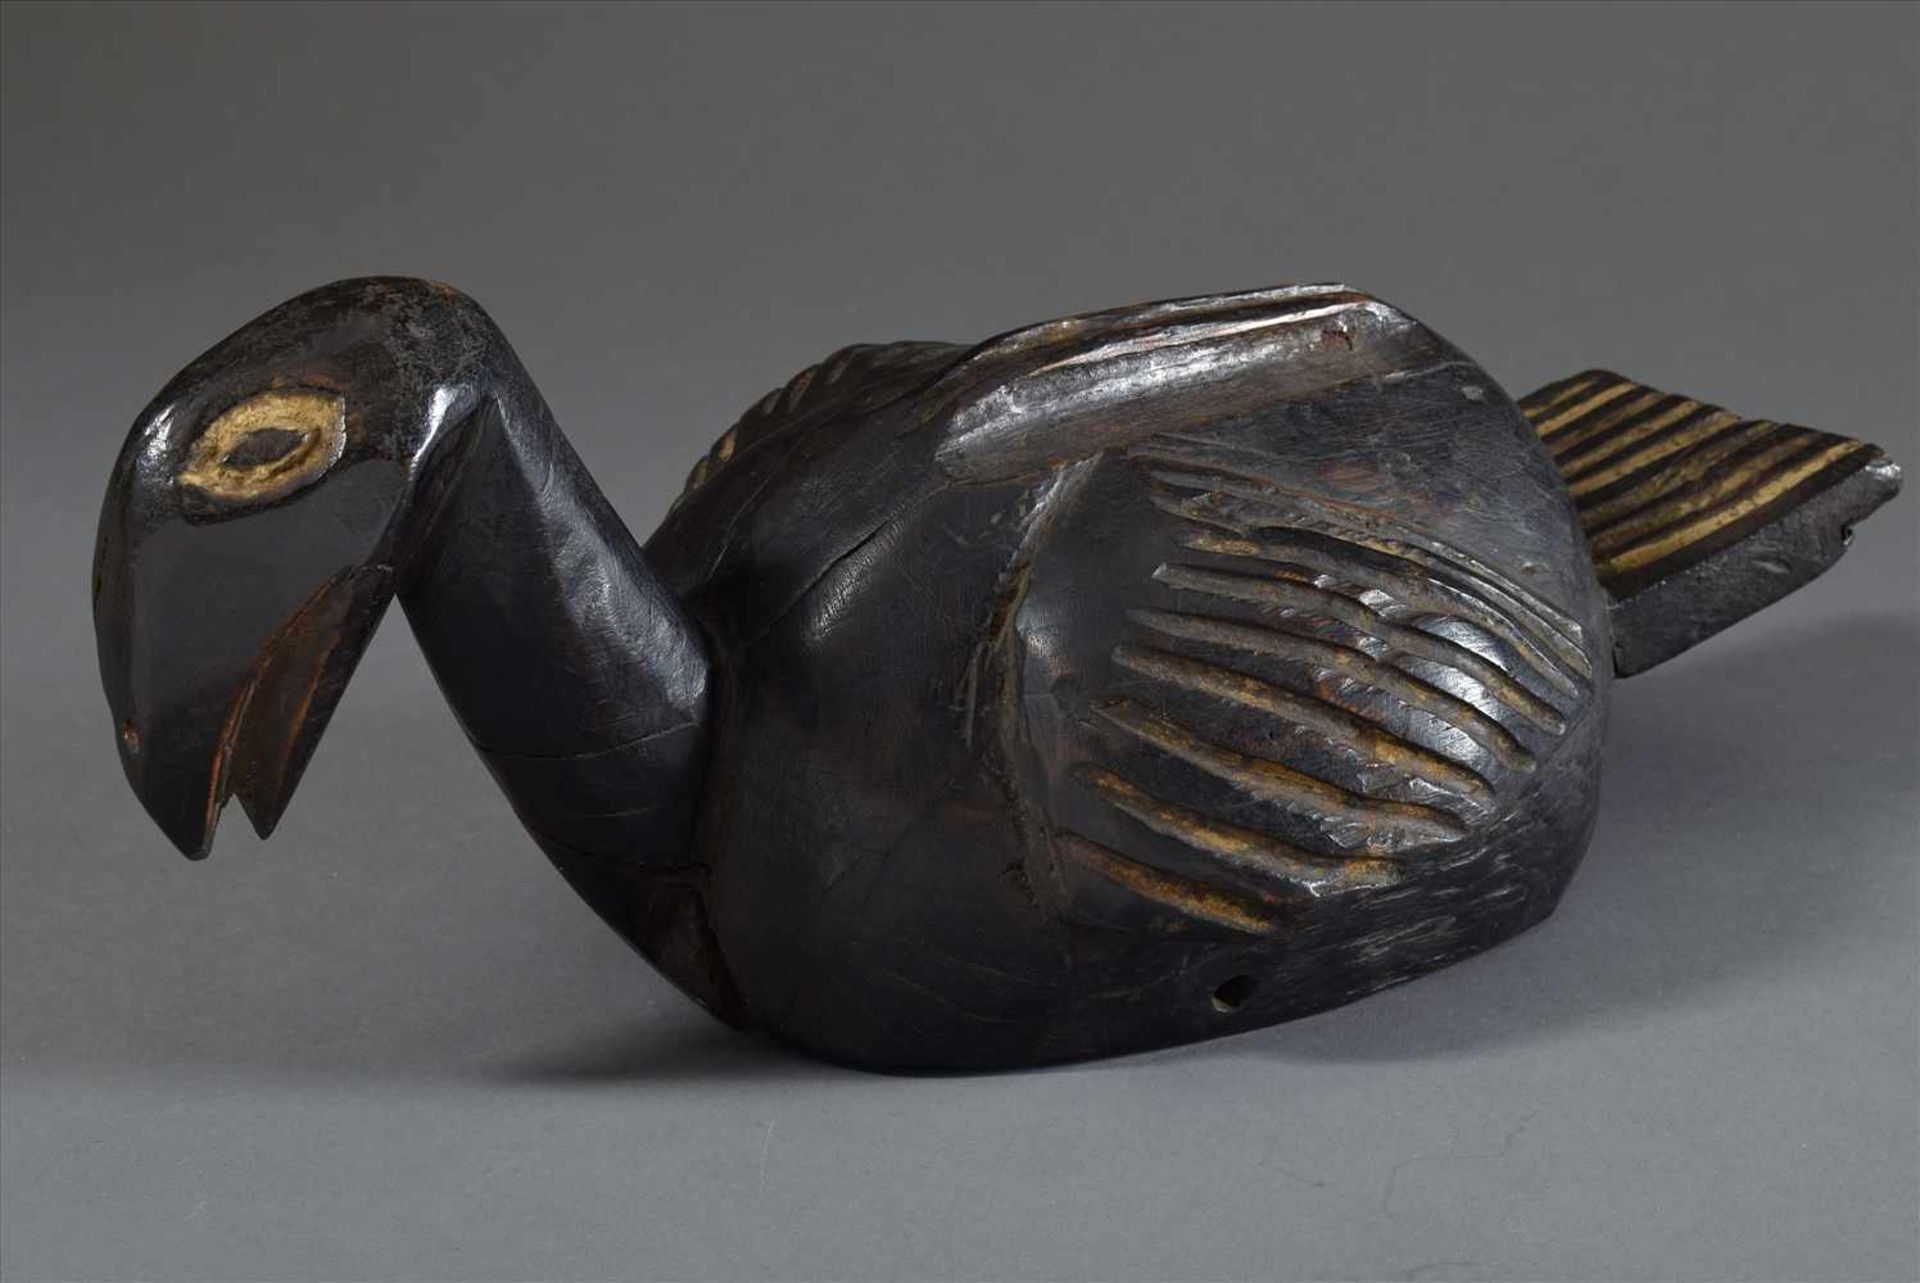 Aufsatz-/Helmmaske der Kosi/Bamileke in Form einer Ente oder Pelikan, Holz, dunkel gefärbt,